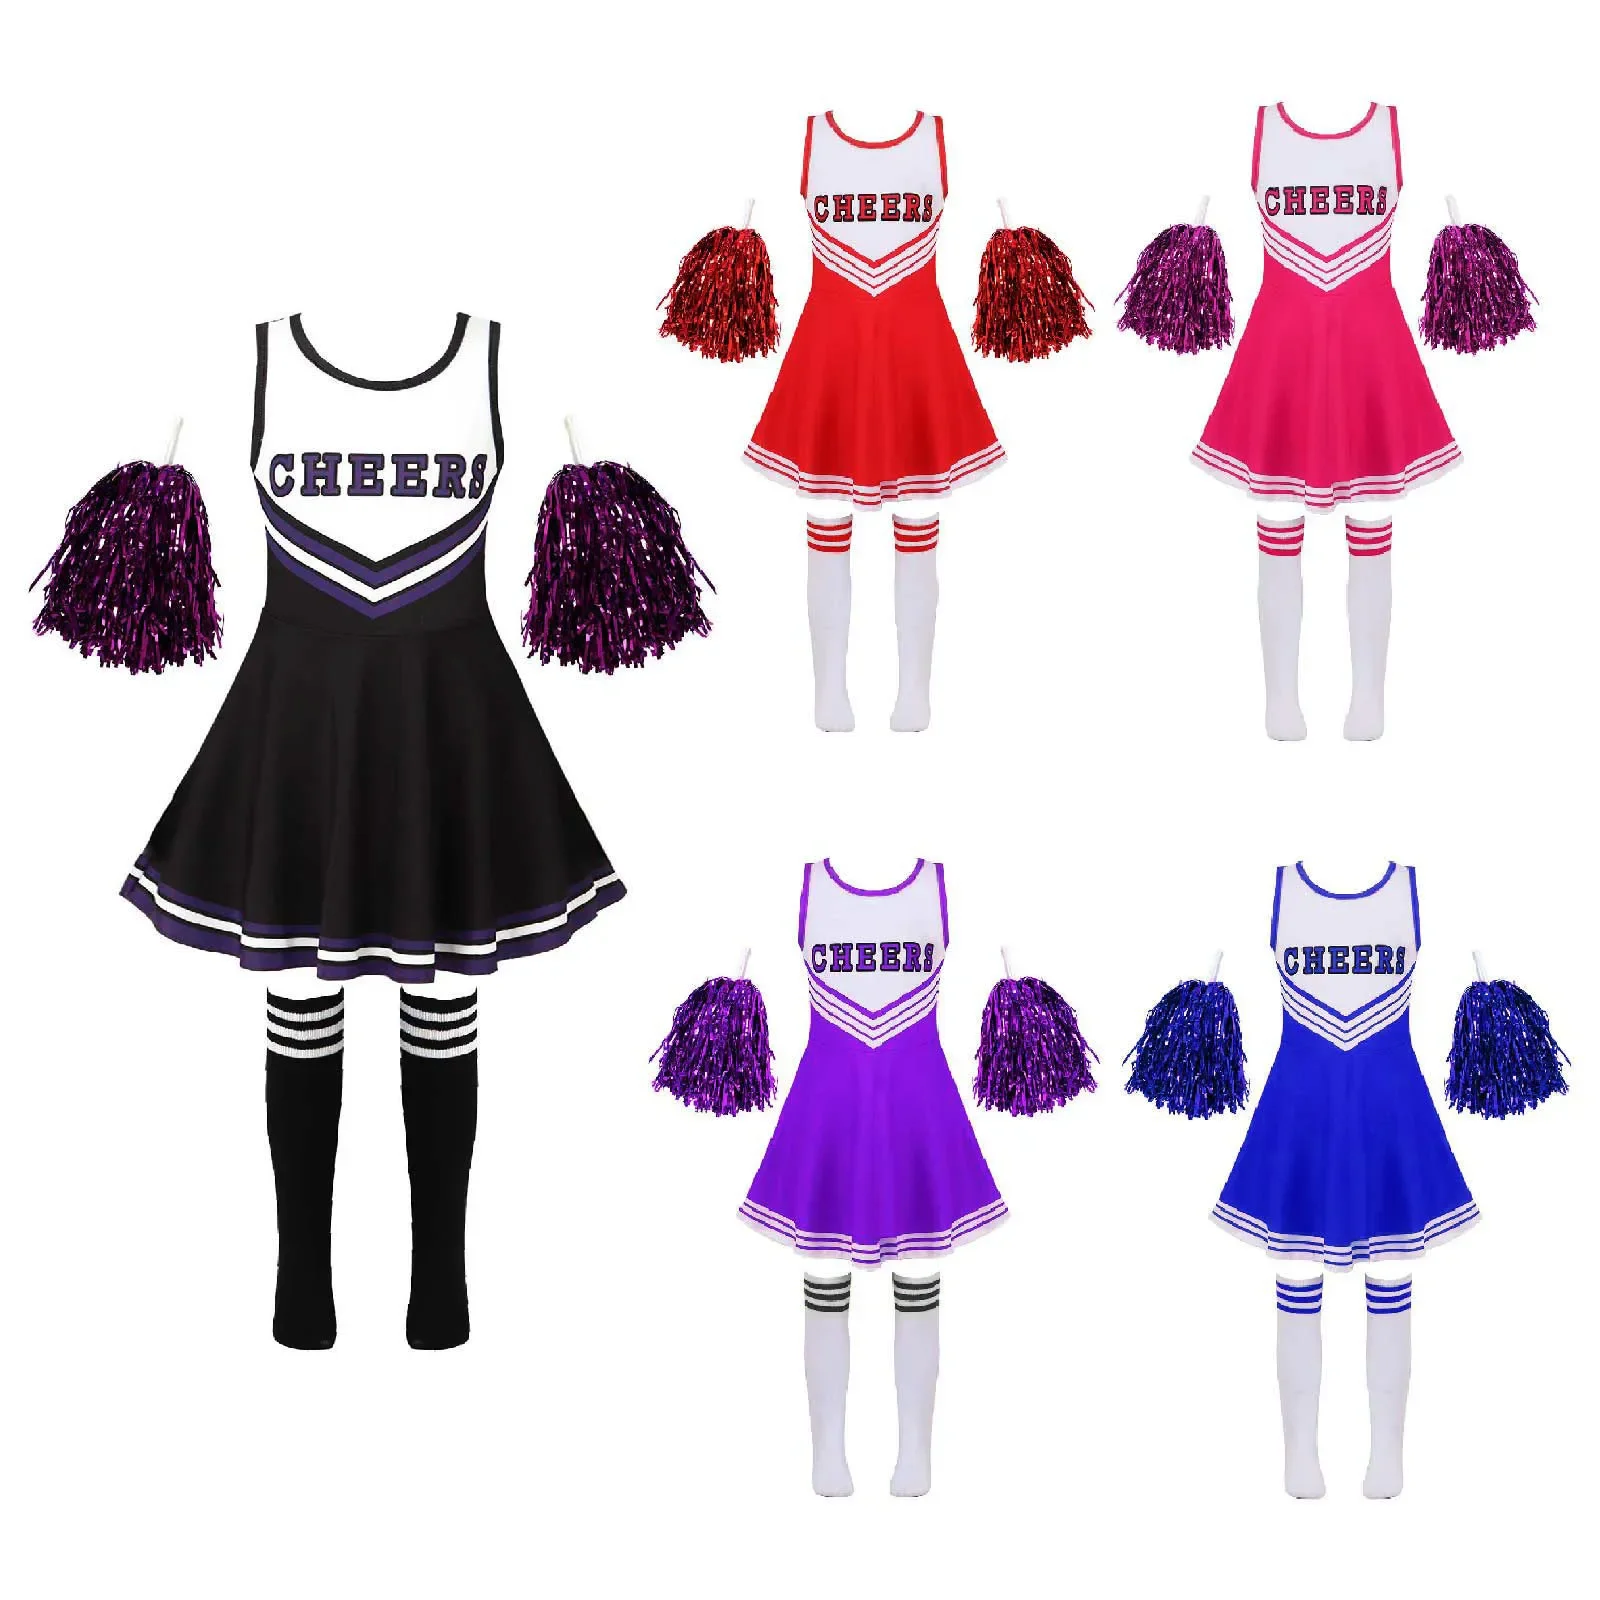 Bambini Cheerleading Costume scuola ragazze Cheerleader uniformi Cheer Dance outfit per Halloween Cosplay Dress con calzini fiore